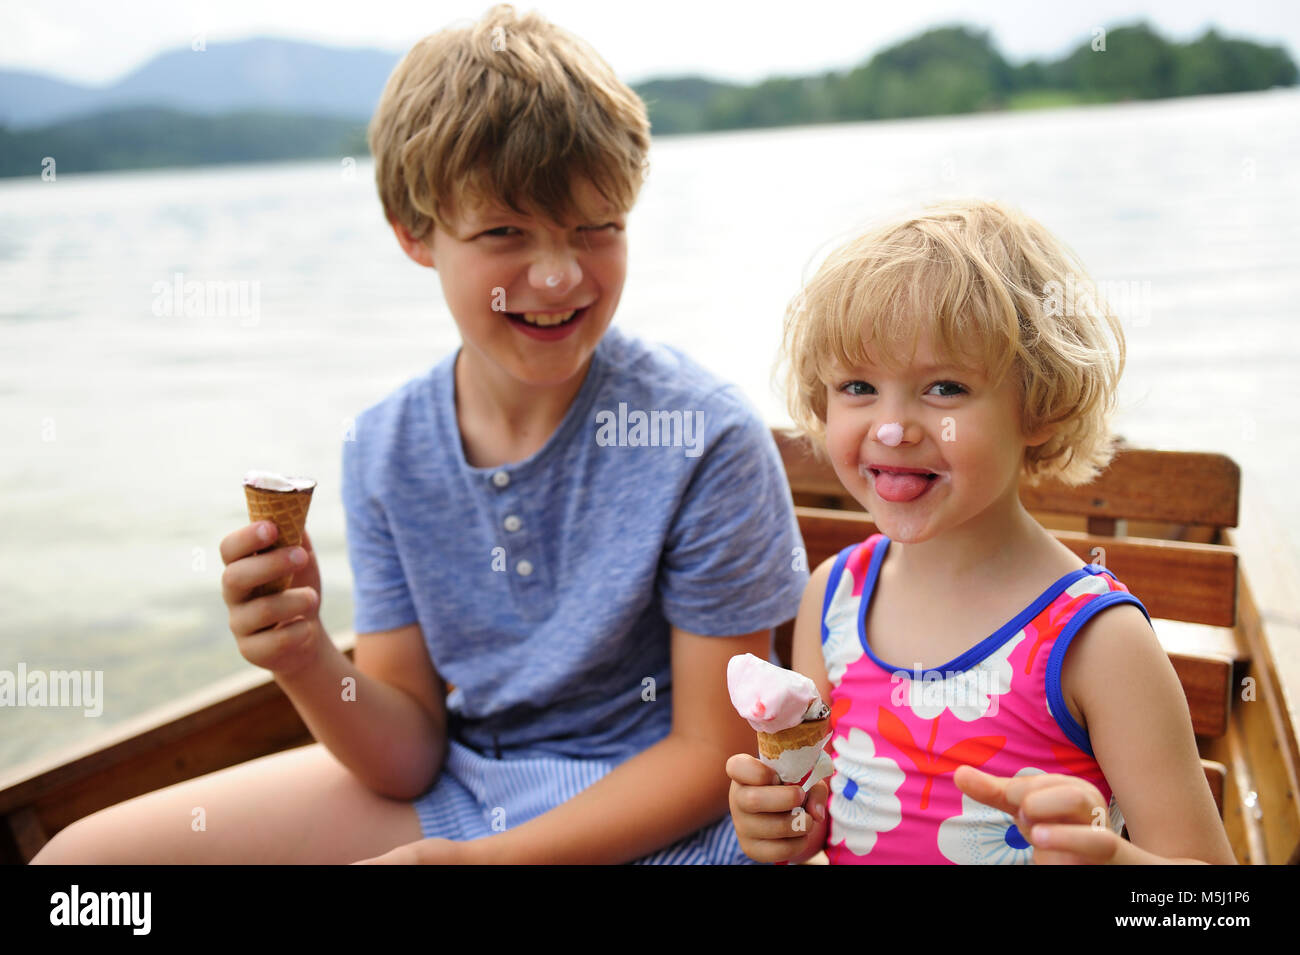 Portrait de petite fille assise en bateau à rames avec son frère manger icecream Banque D'Images